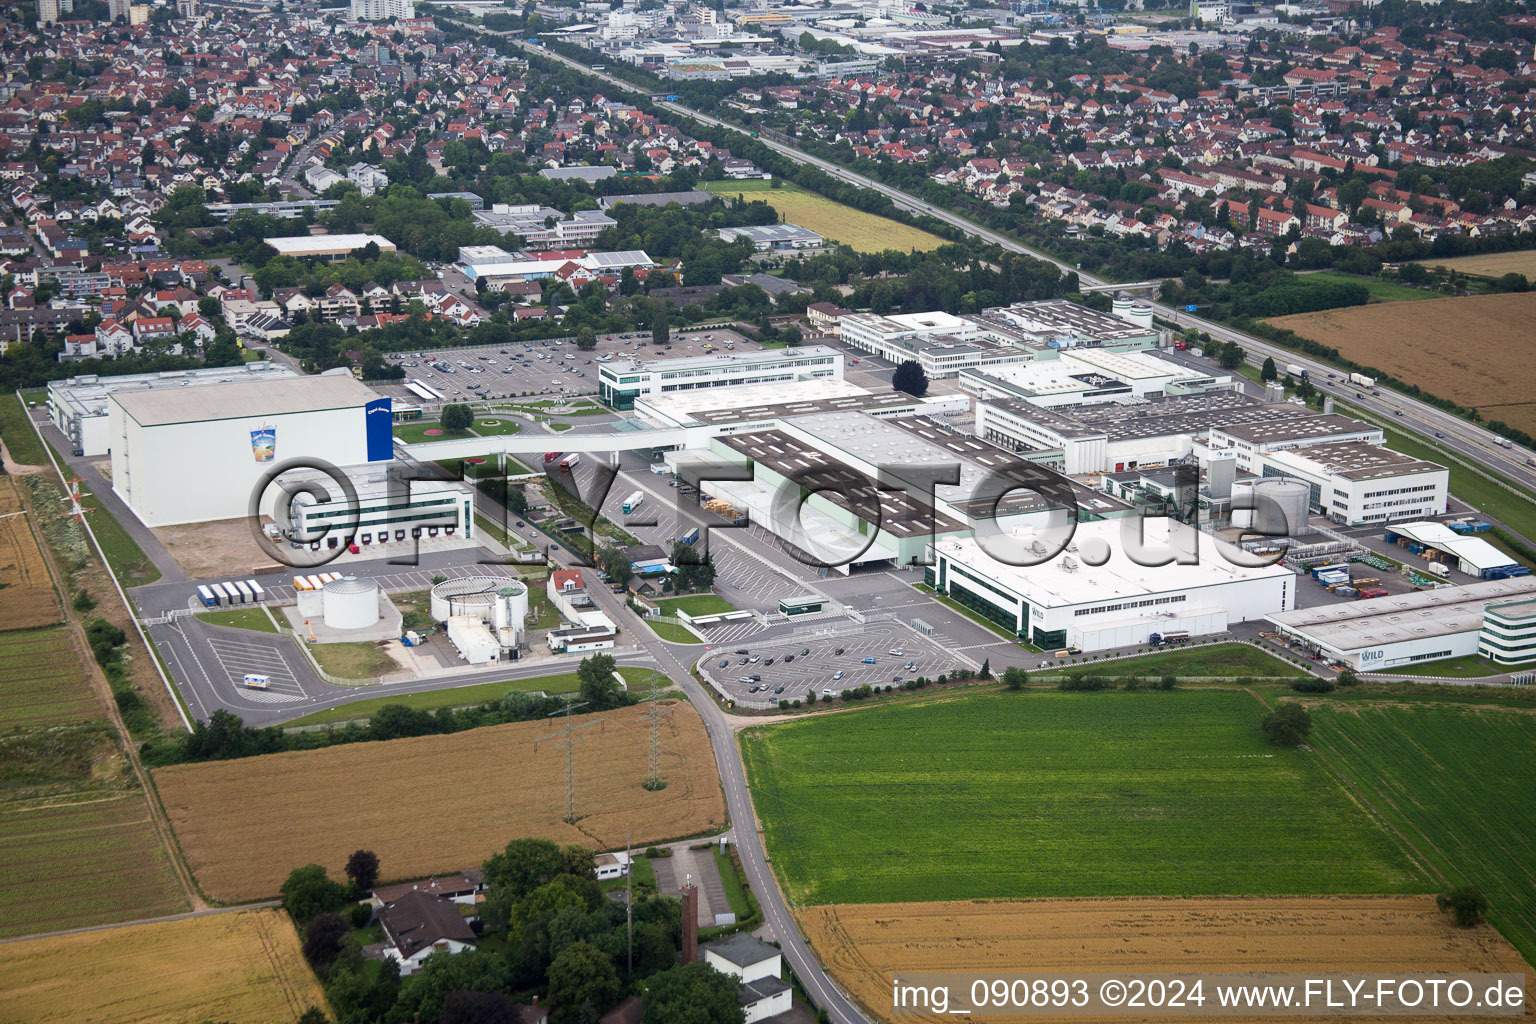 Vue aérienne de Locaux de l'usine Rudolf Wild GmbH & Co. KG (Capri-Sonne) à Eppelheim dans le département Bade-Wurtemberg, Allemagne